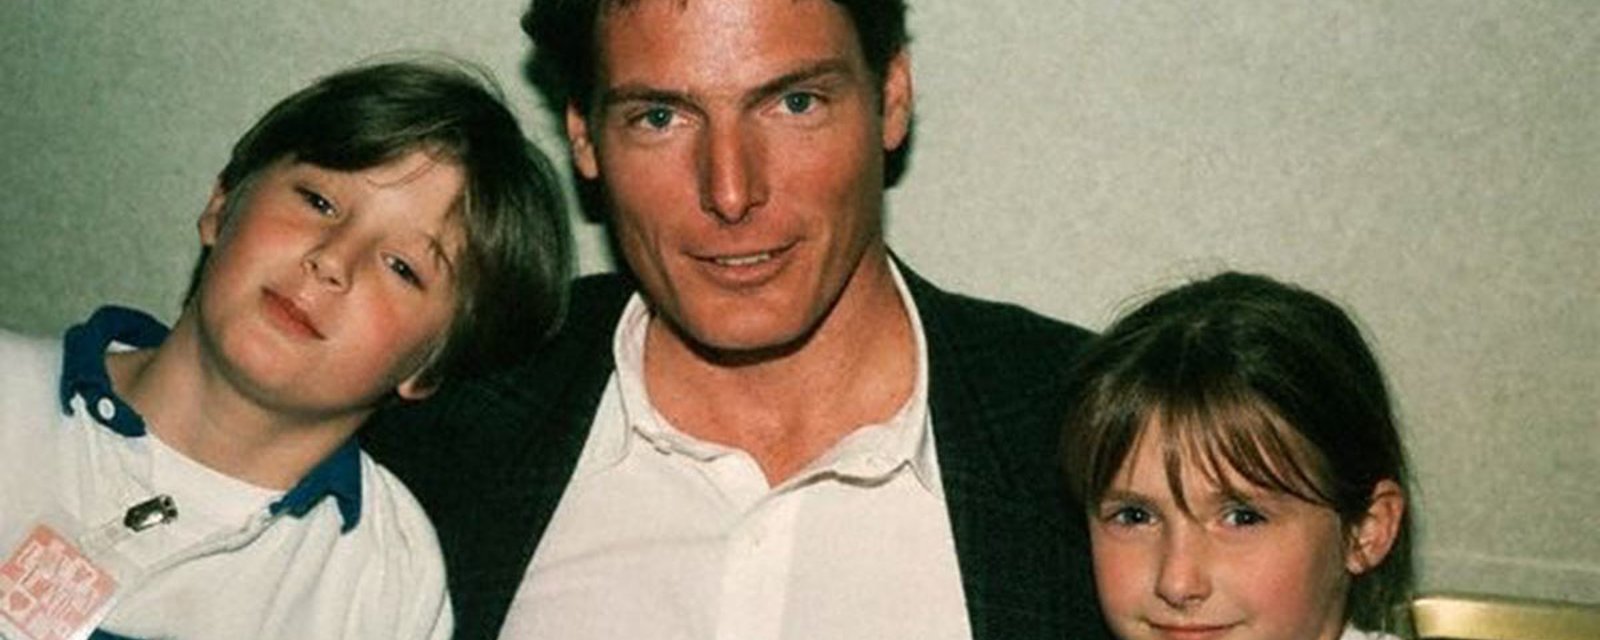 Les enfants de Christopher Reeve ont beaucoup grandi... et ils ressemblent tellement à leur père!